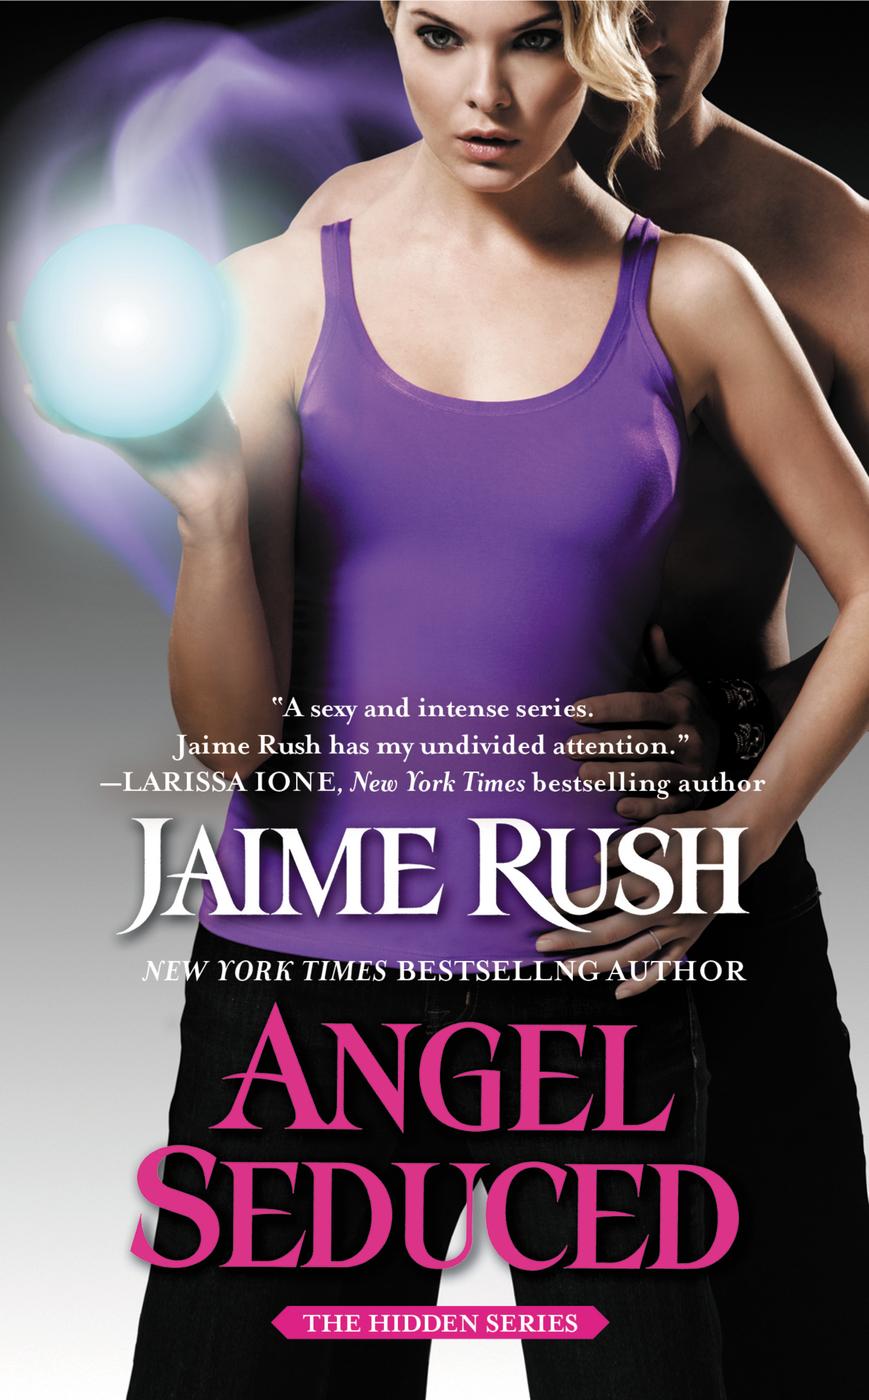 Angel Seduced (2014) by Jaime Rush